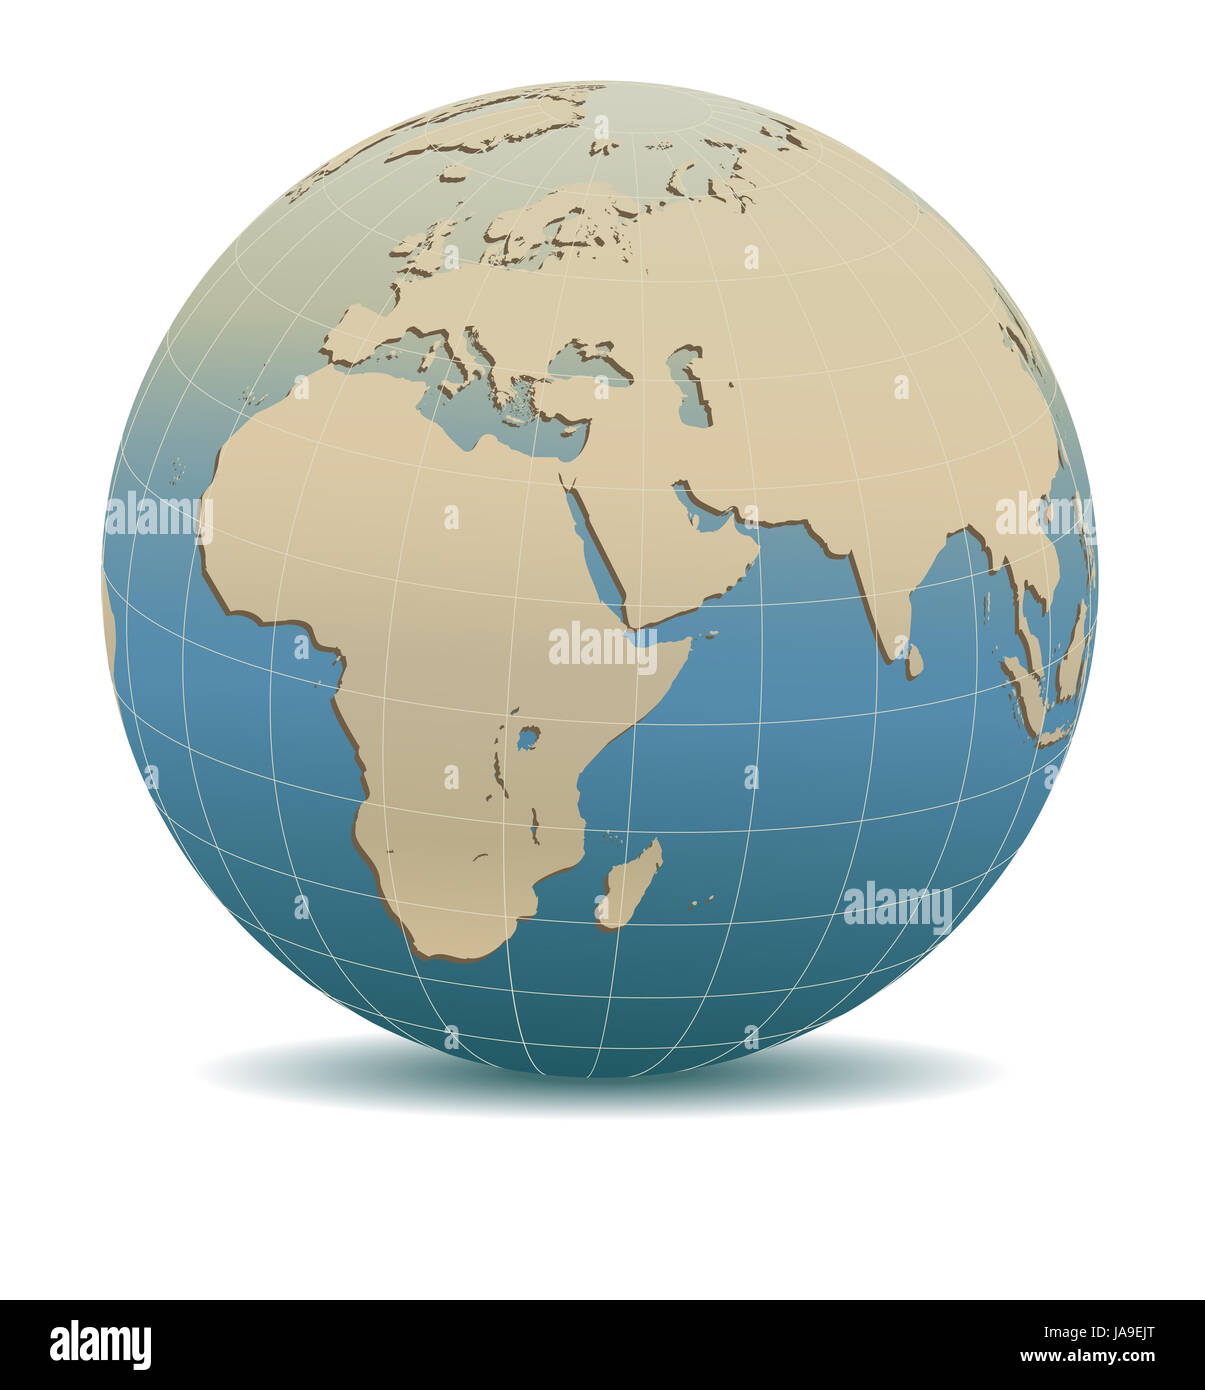 Retro Style Afrique, Moyen-Orient, l'Arabie et l'Inde monde global, les éléments de cette image fournie par la NASA Banque D'Images